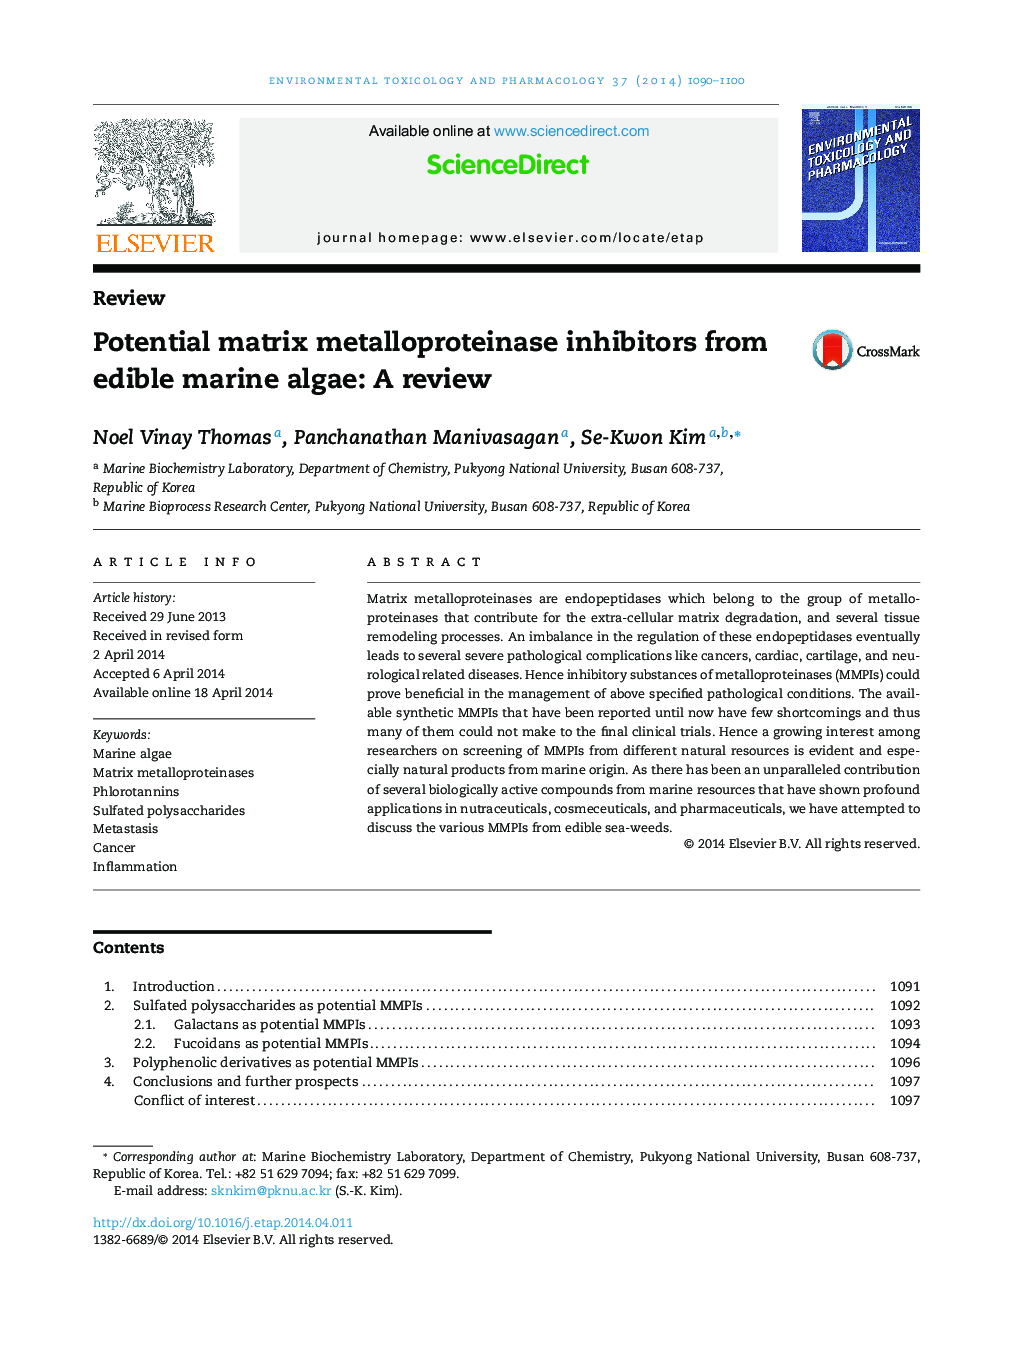 مهار کننده های ماتریکس متیل پروتئیناز پتانسیل از جلبک دریایی خوراکی: یک بررسی 